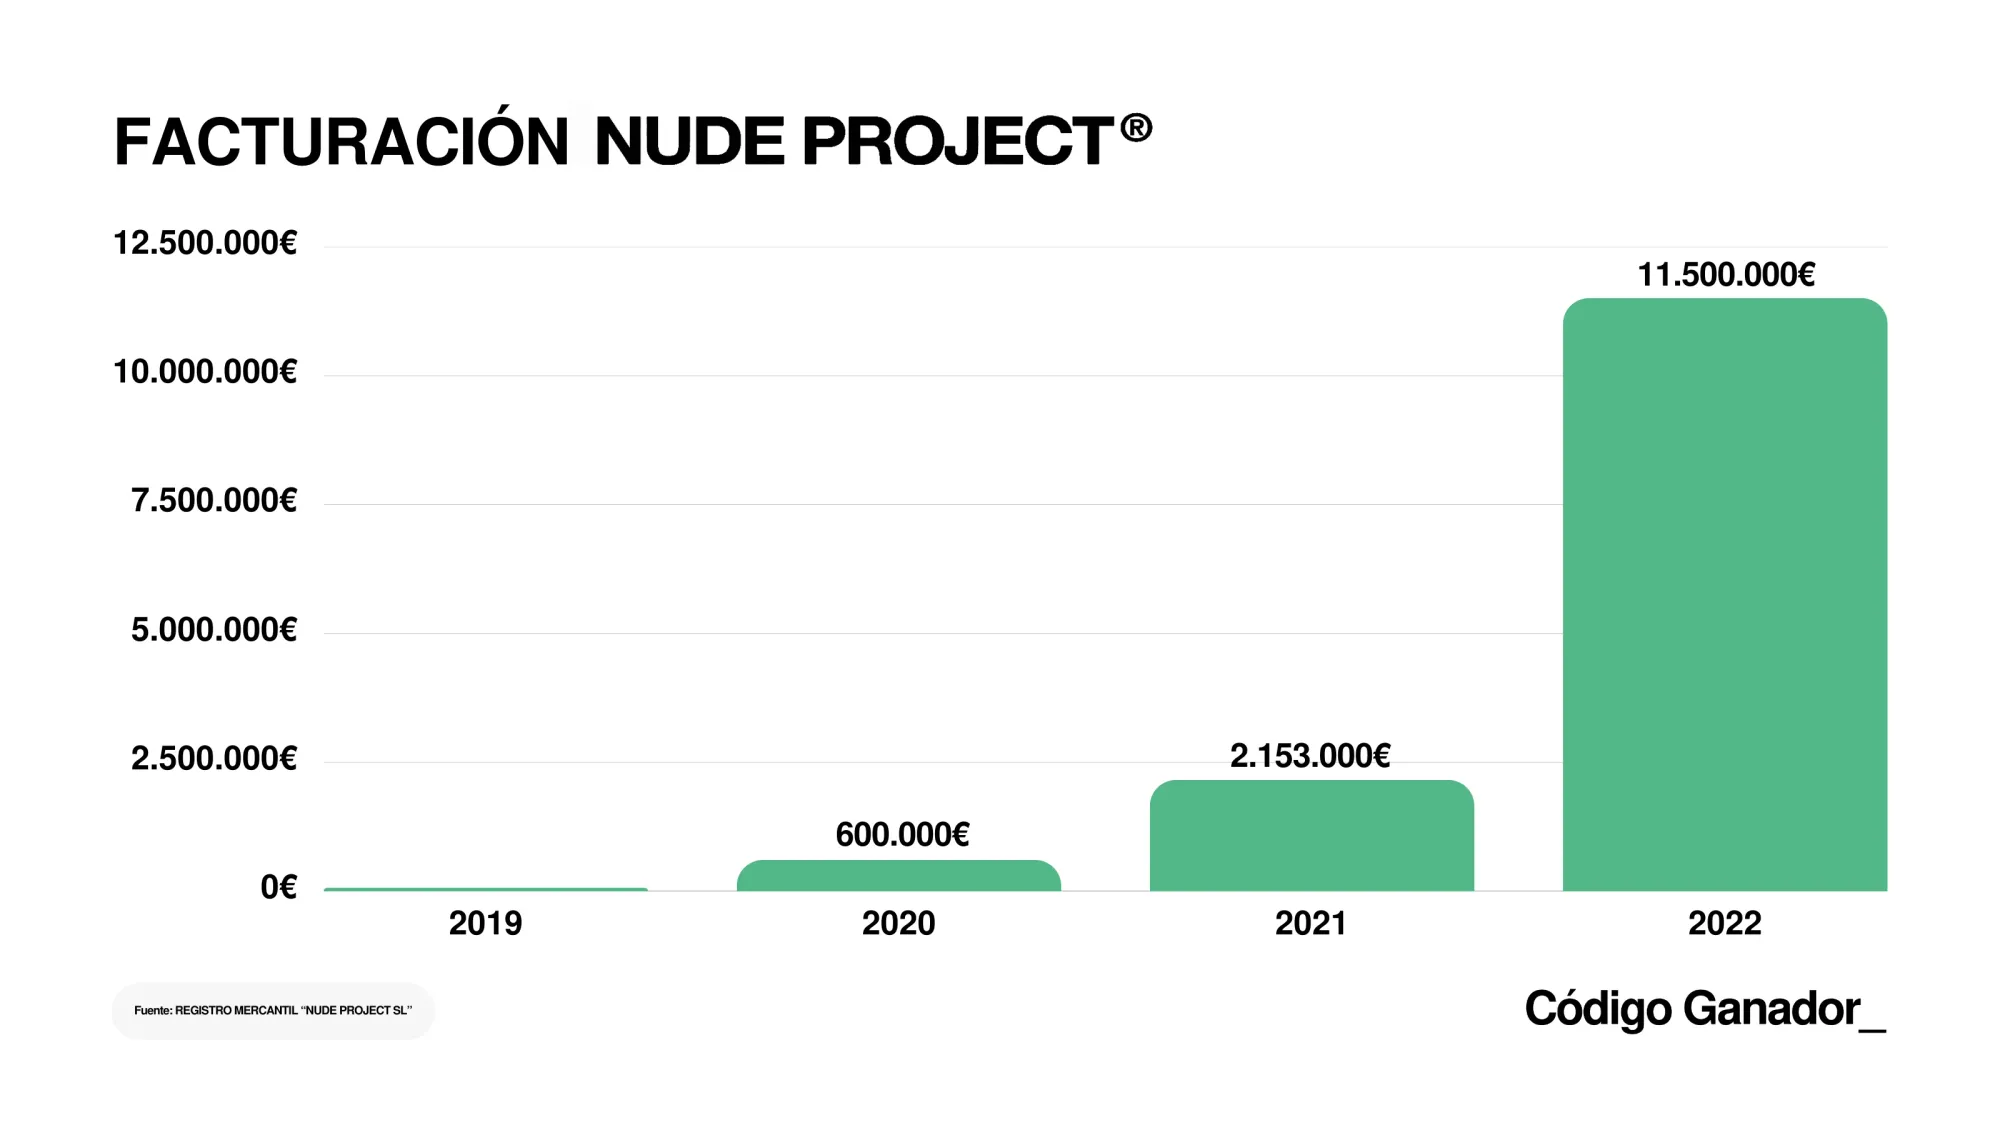 Grafico de facturación anual de la marca Nude Project